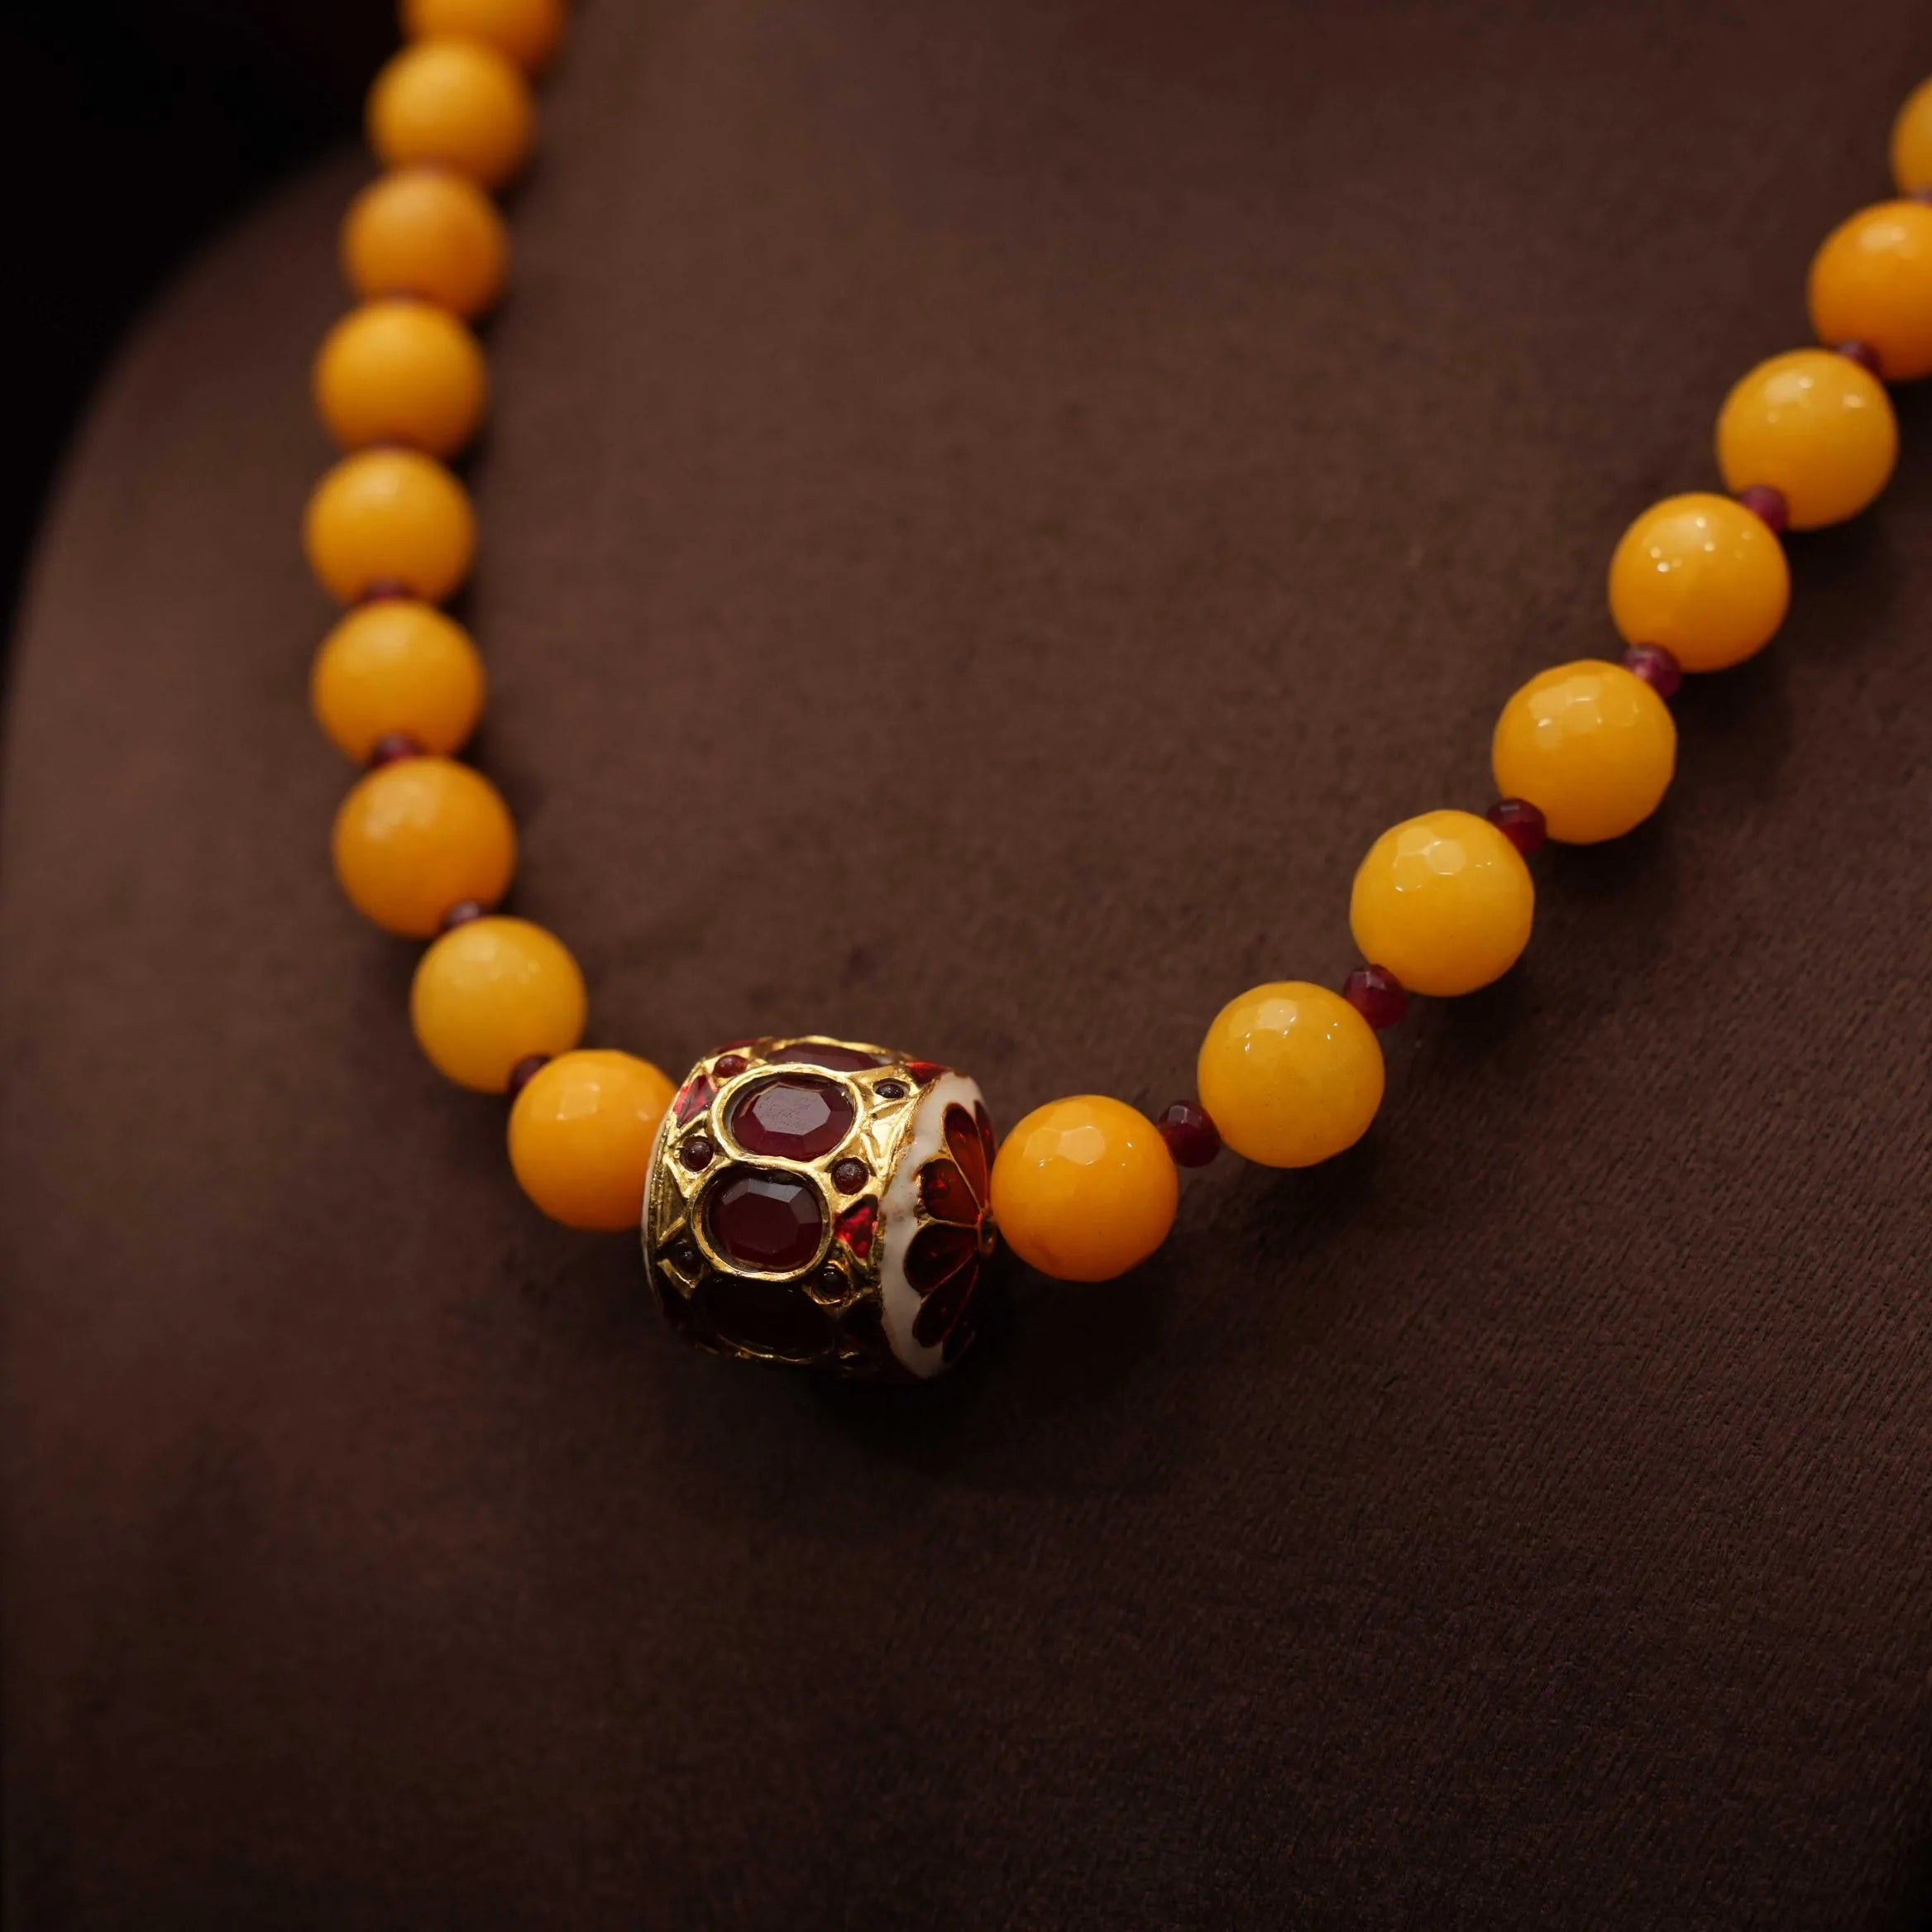 Aisha Beaded Necklace - Mustard Yellow